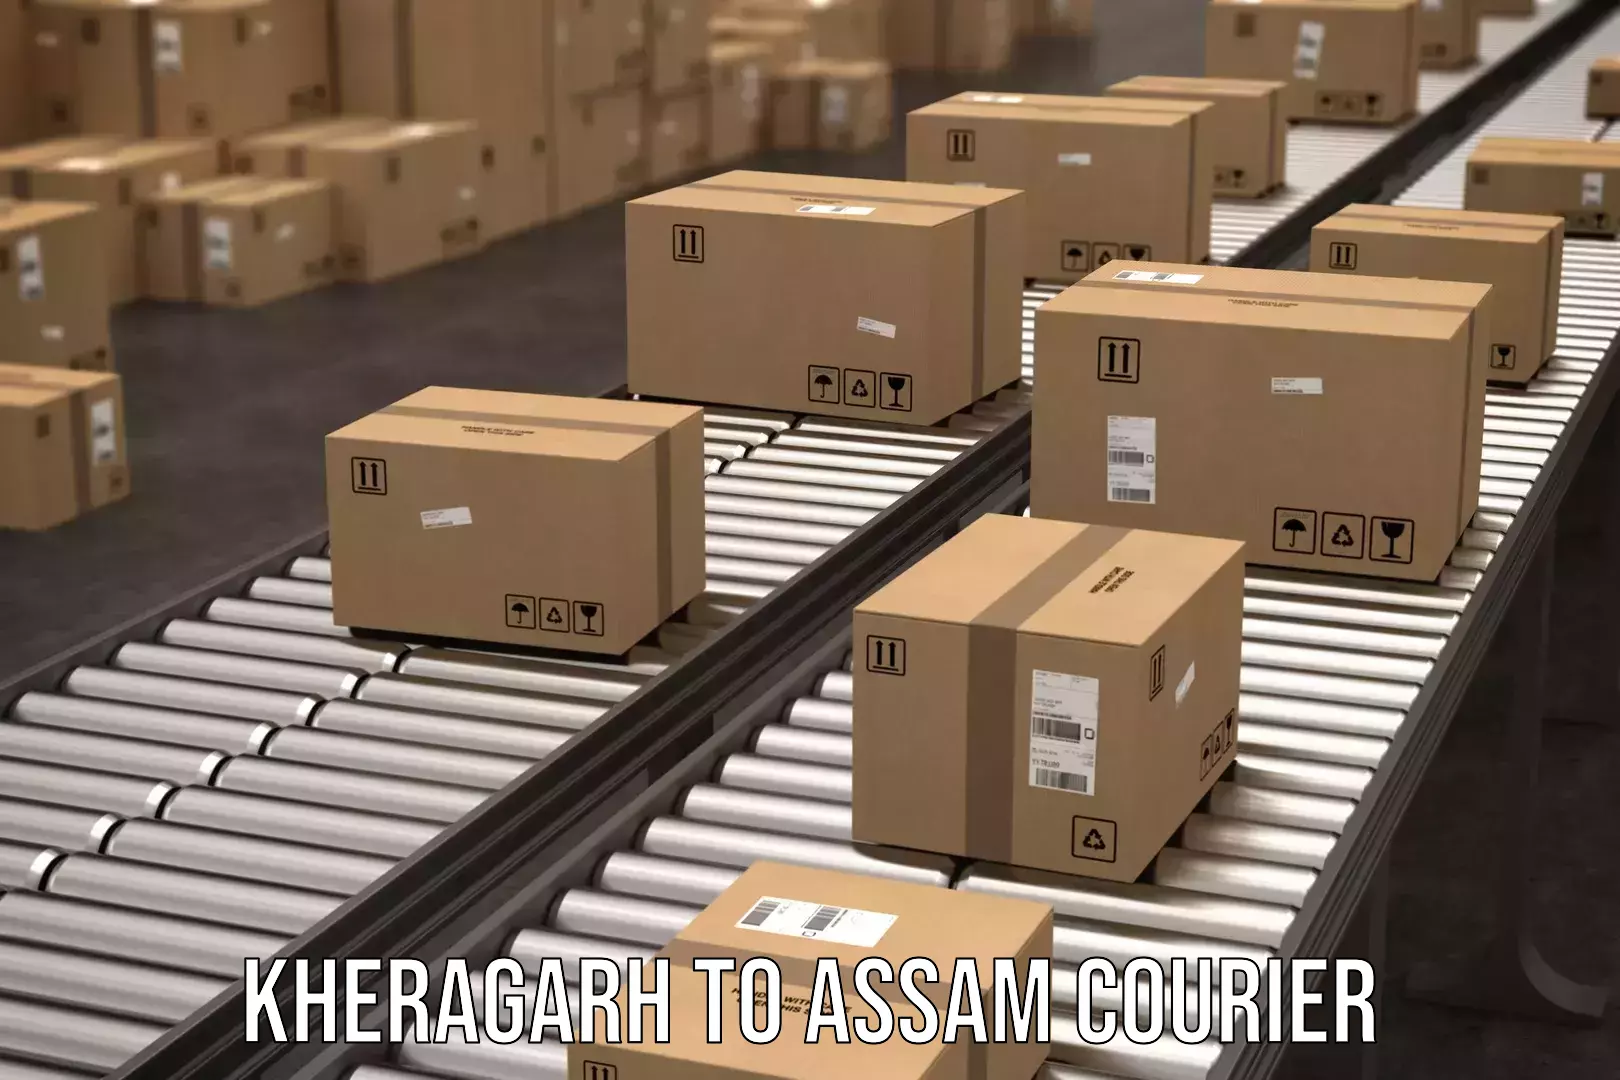 Door-to-door freight service Kheragarh to Assam